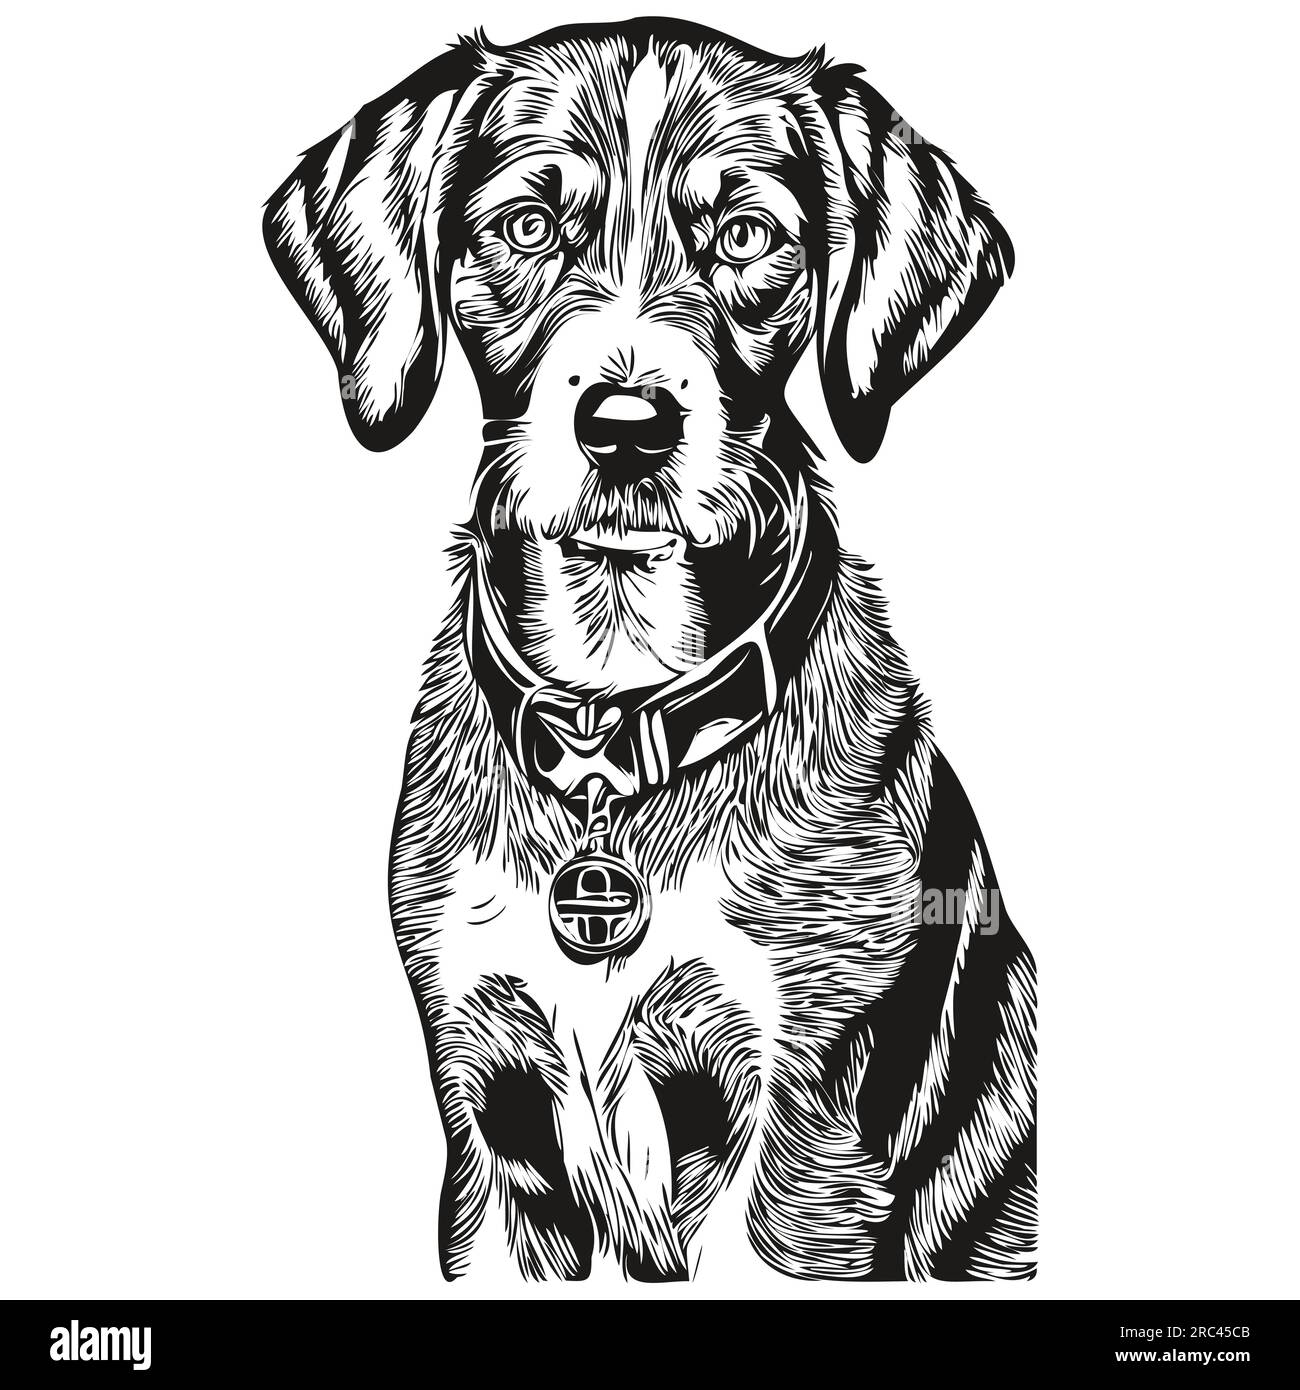 Bluetick Coonhound chien dessin au trait, clip art animal dessin à la main vecteur noir et blanc animal de compagnie réaliste de race Illustration de Vecteur